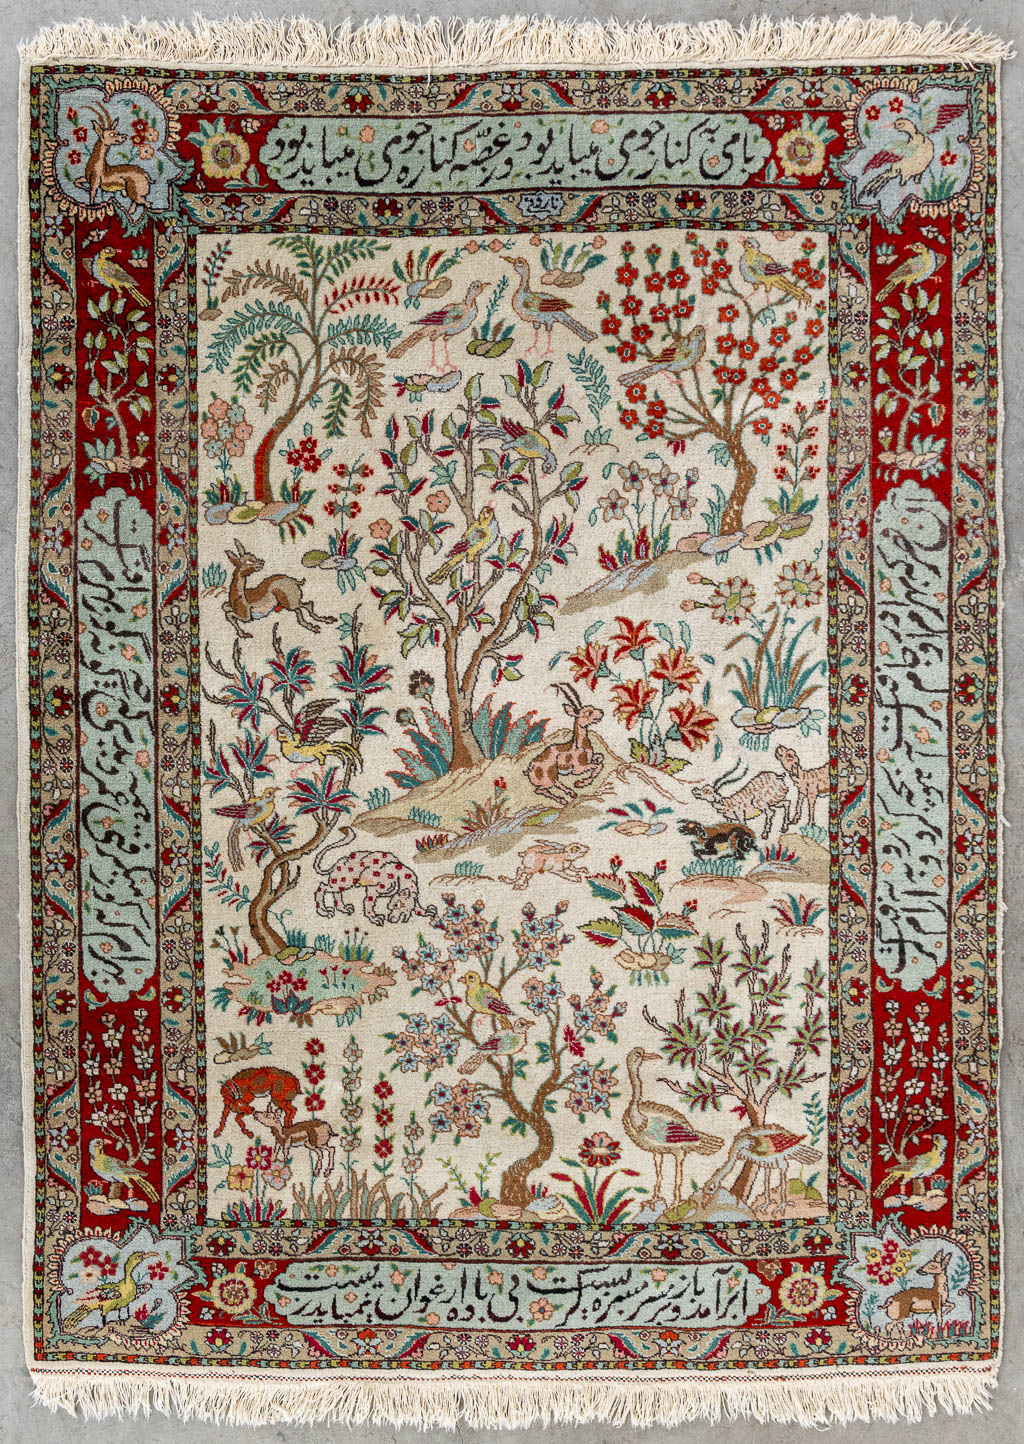 Lot 215 Een Oosters handgeknoopt tapijt, Tabriz, getekend. (L:150 x W:107 cm)